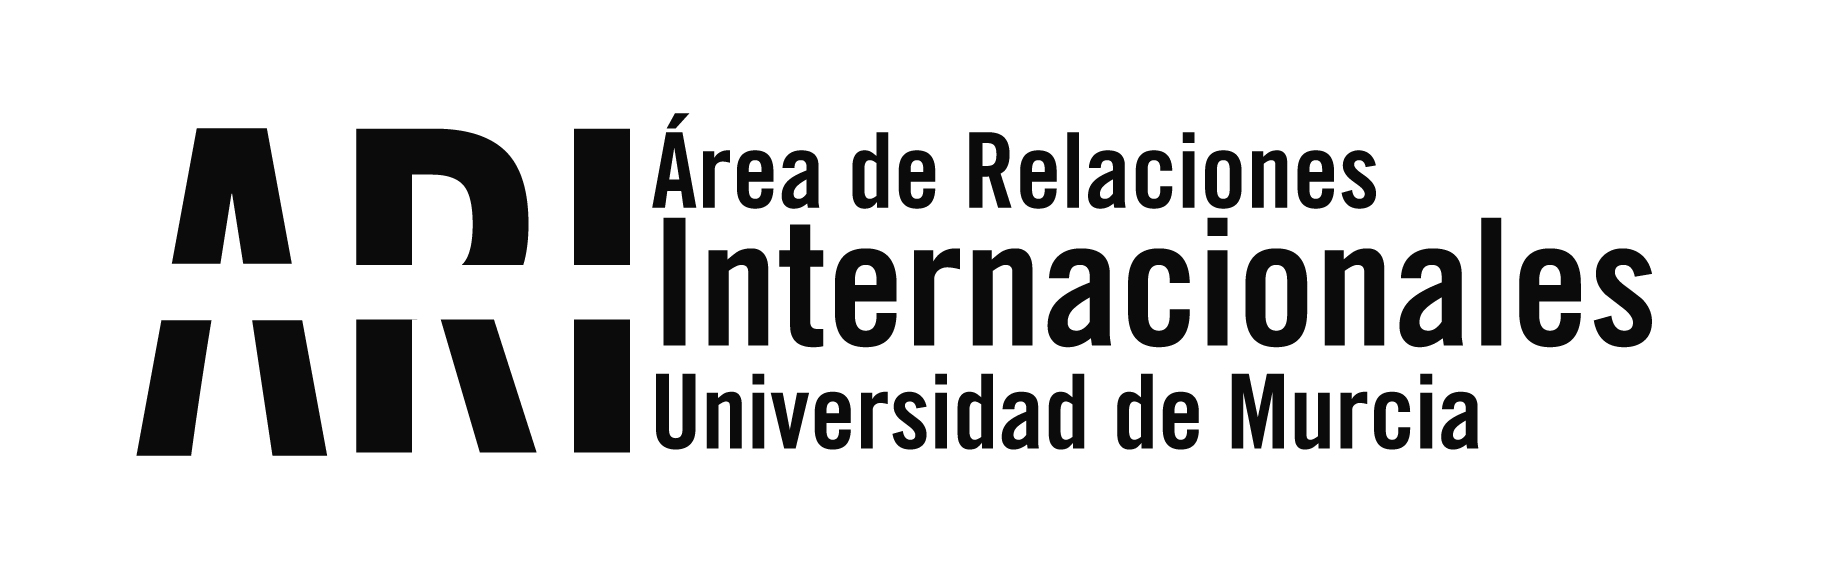 2017-03 III Encuentro Hispano Argelino en la UM - Eventos - Área de Relaciones Internacionales